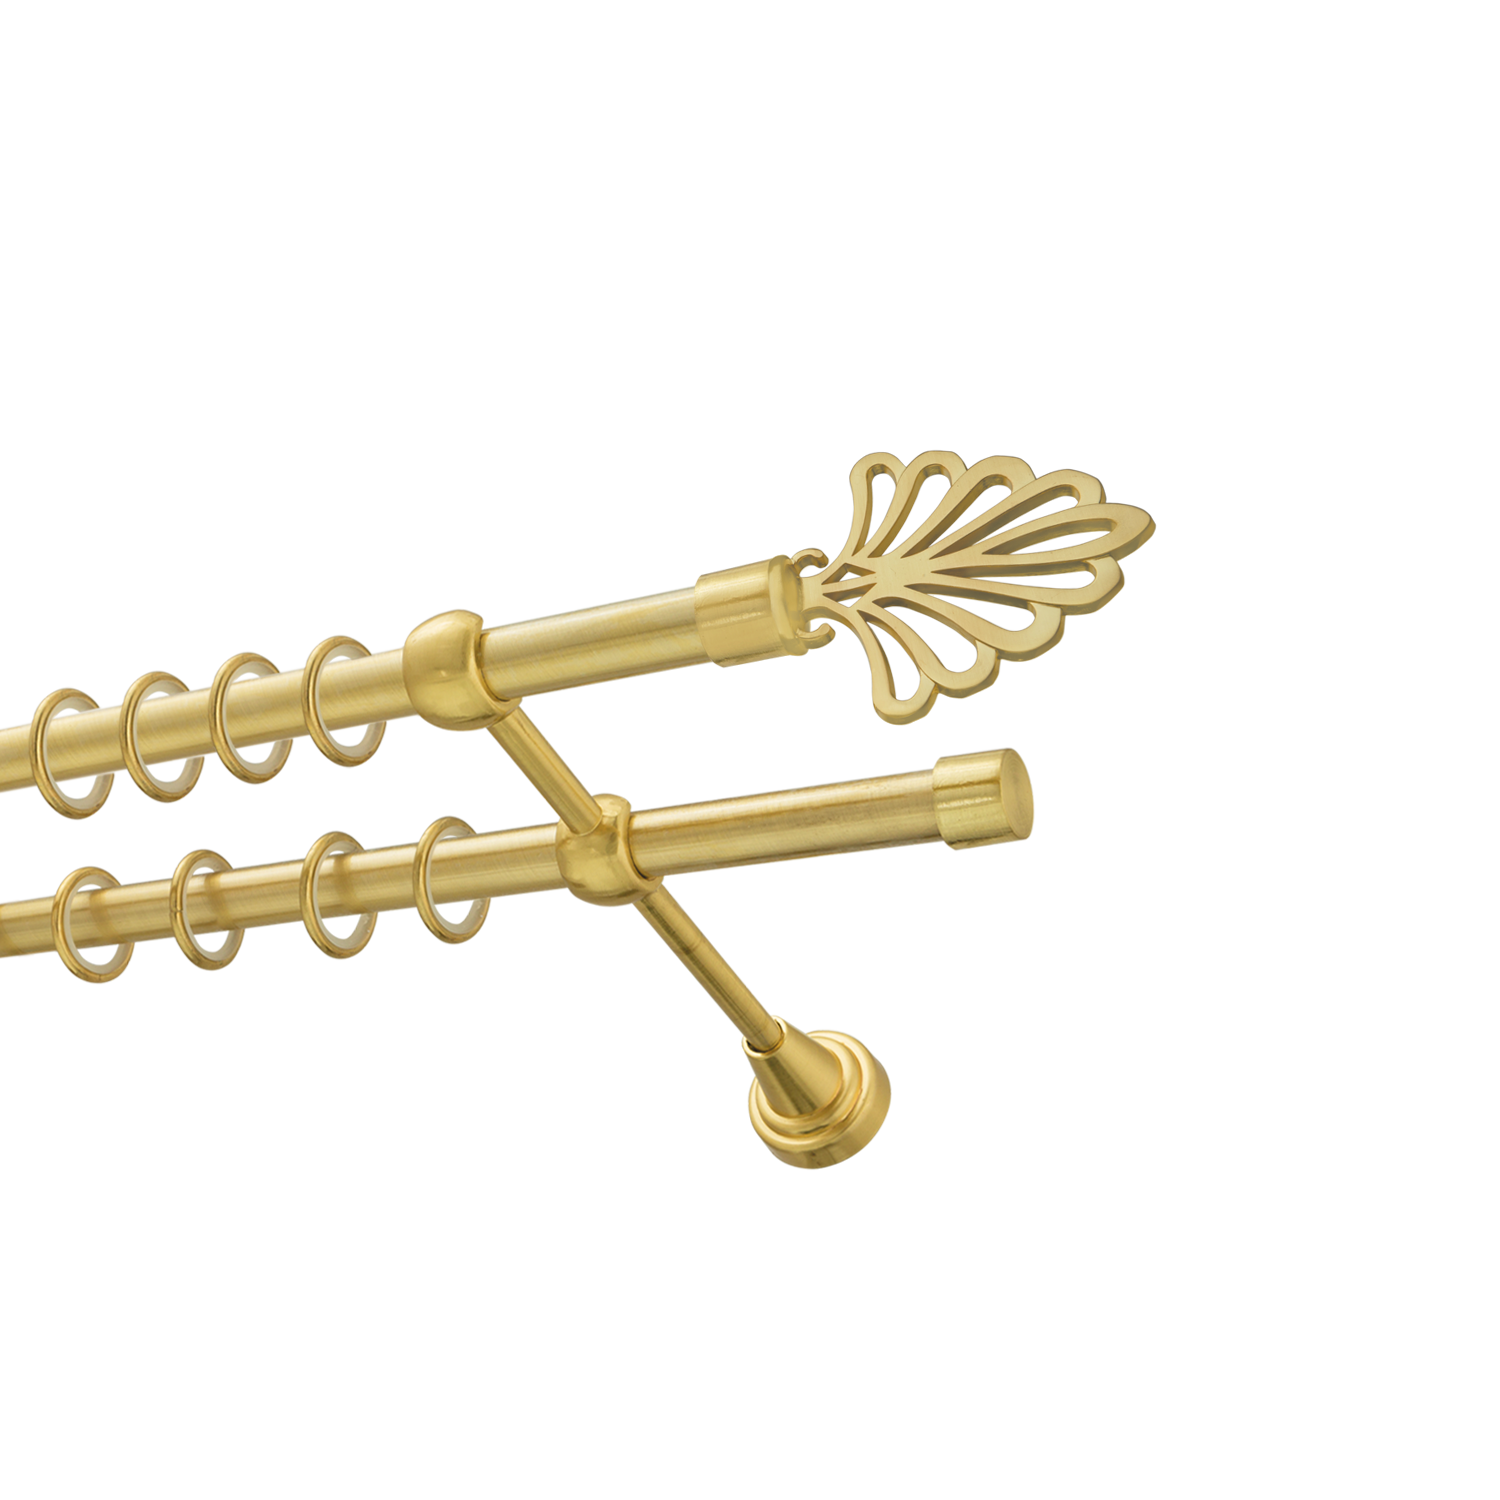 Металлический карниз для штор Бутик, двухрядный 16/16 мм, золото, гладкая штанга, длина 160 см - фото Wikidecor.ru